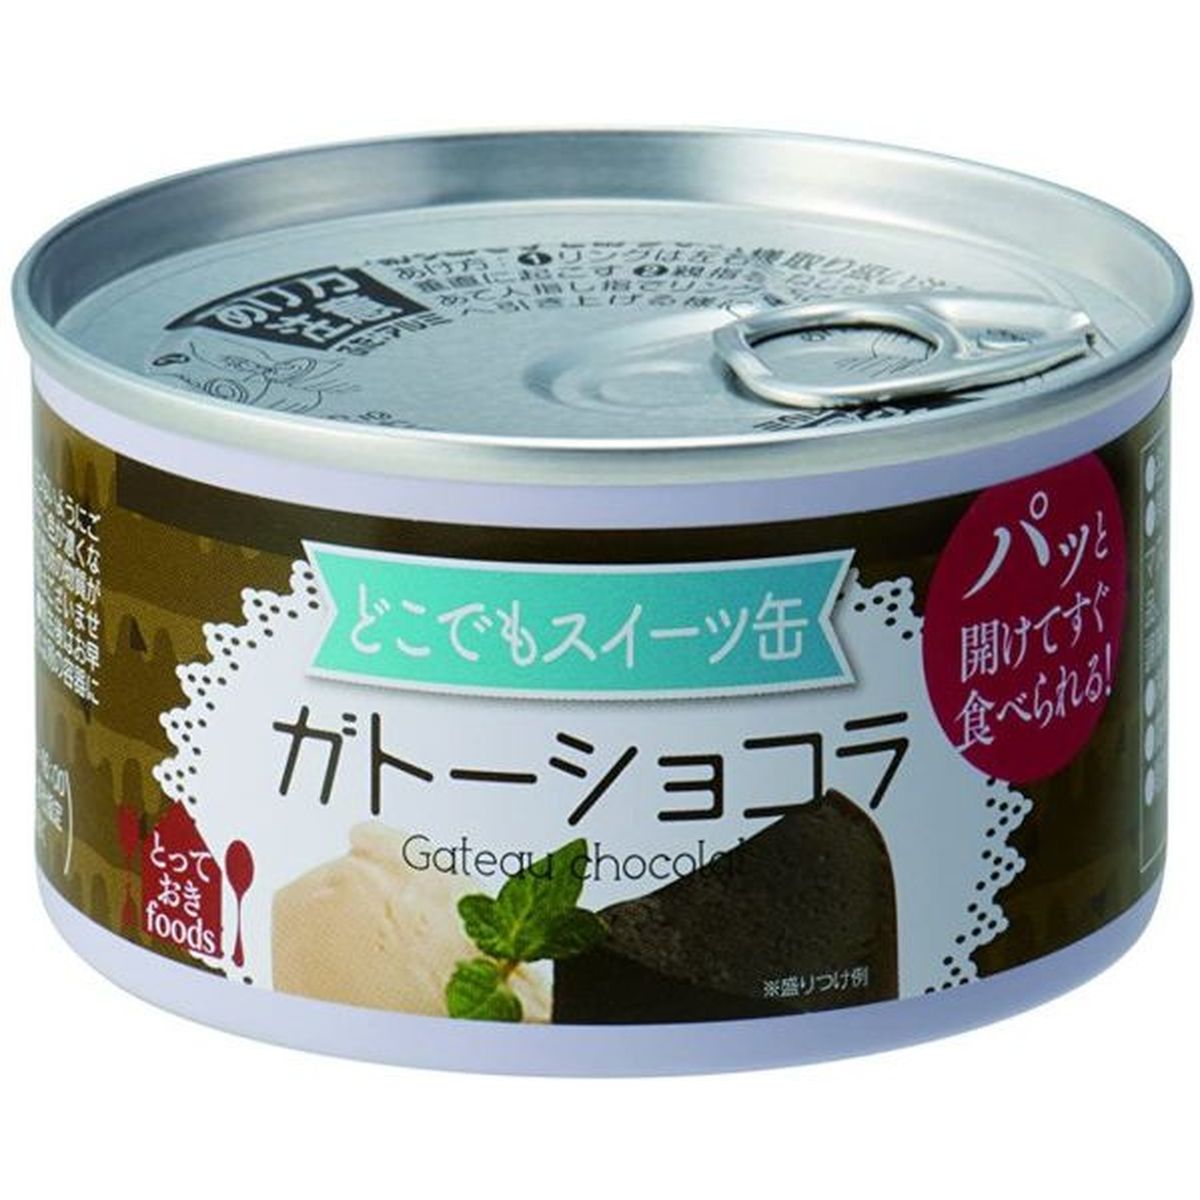 【24個入リ】トーヨーフーズ ドコデモスイーツ缶 ガトーショコラ 150g